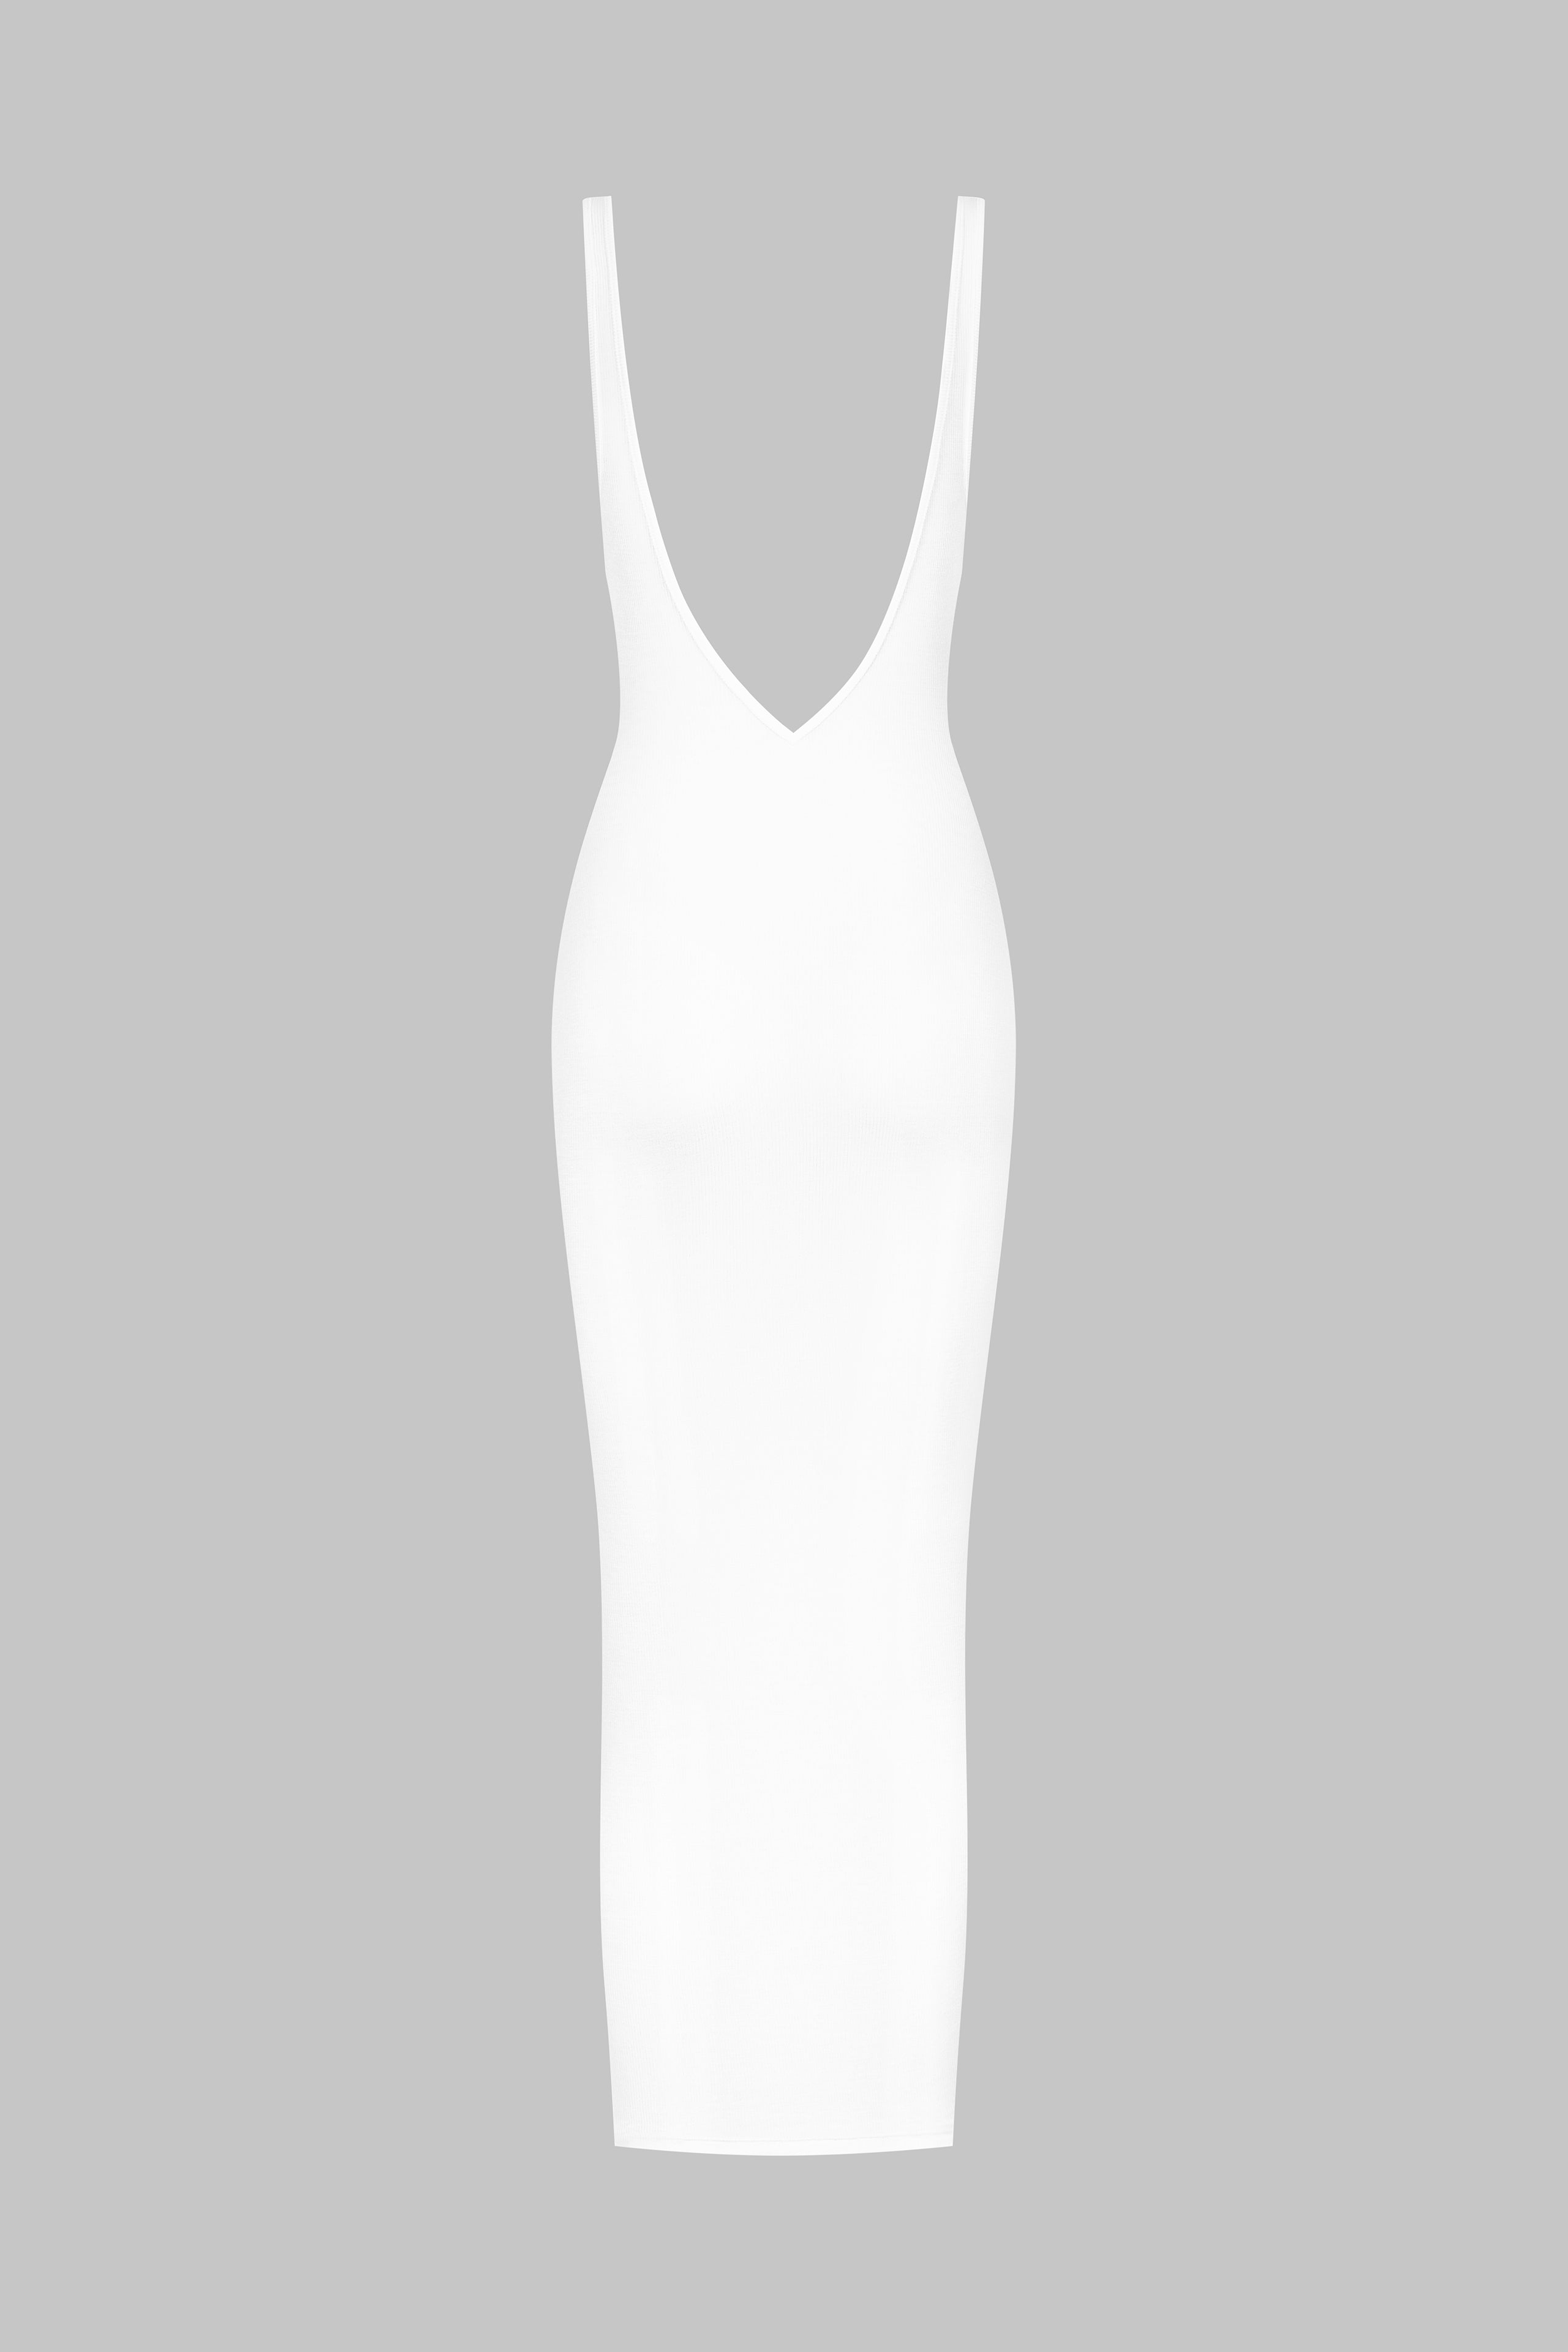 Naked back dress - La Femme Amazone